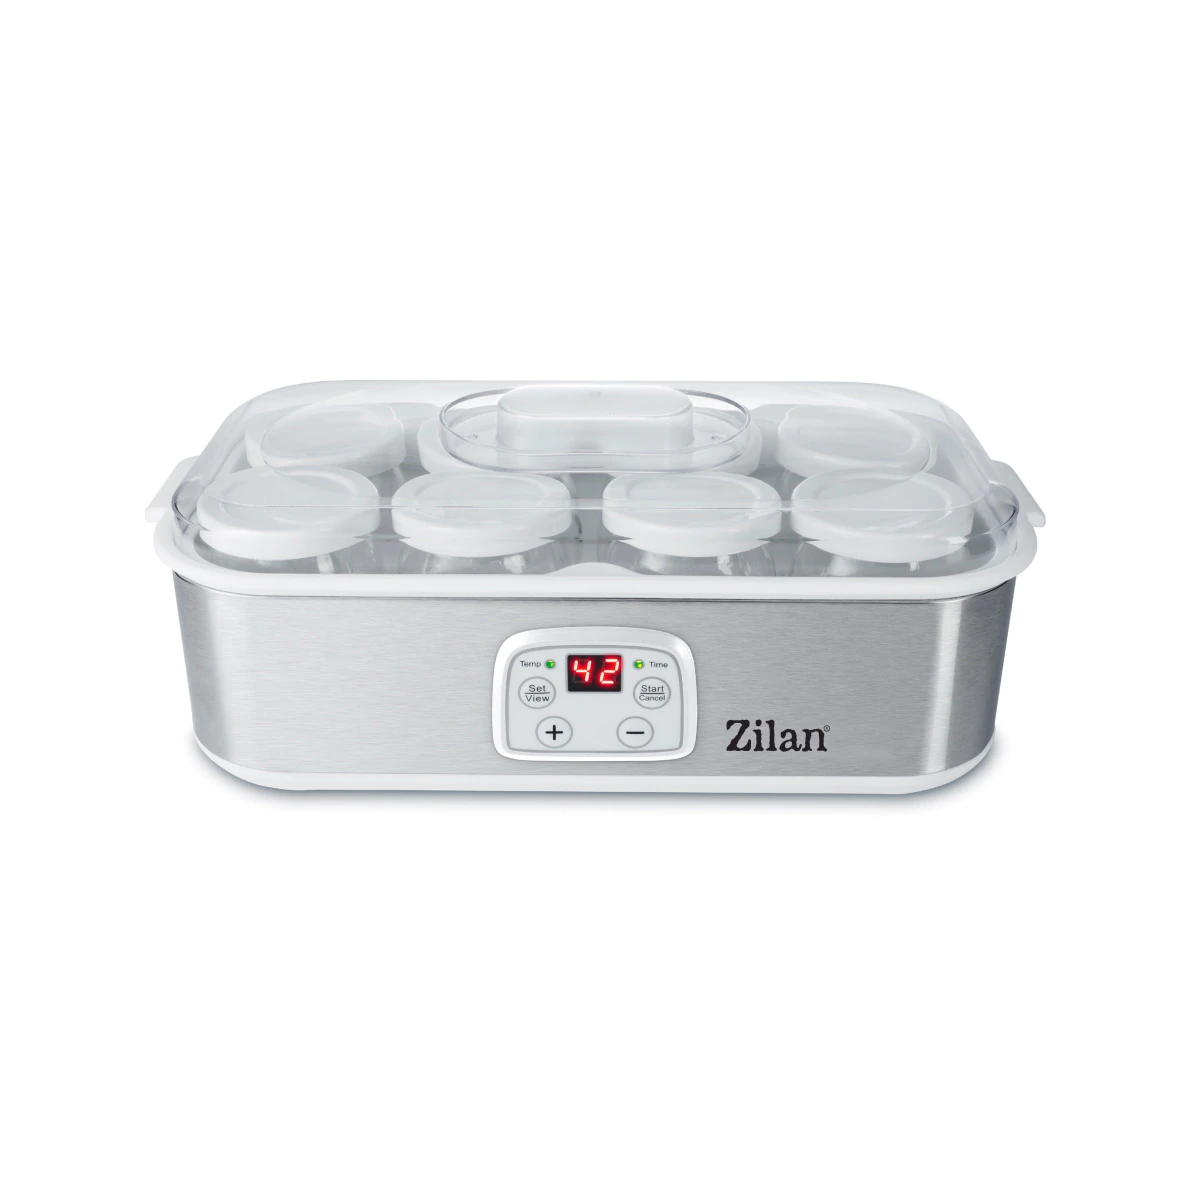 Aparat pentru facut iaurt, Zilan ZLN6104, 25W, Afisaj LED, 8 recipiente 180ml, Termostat reglabil, Argintiu